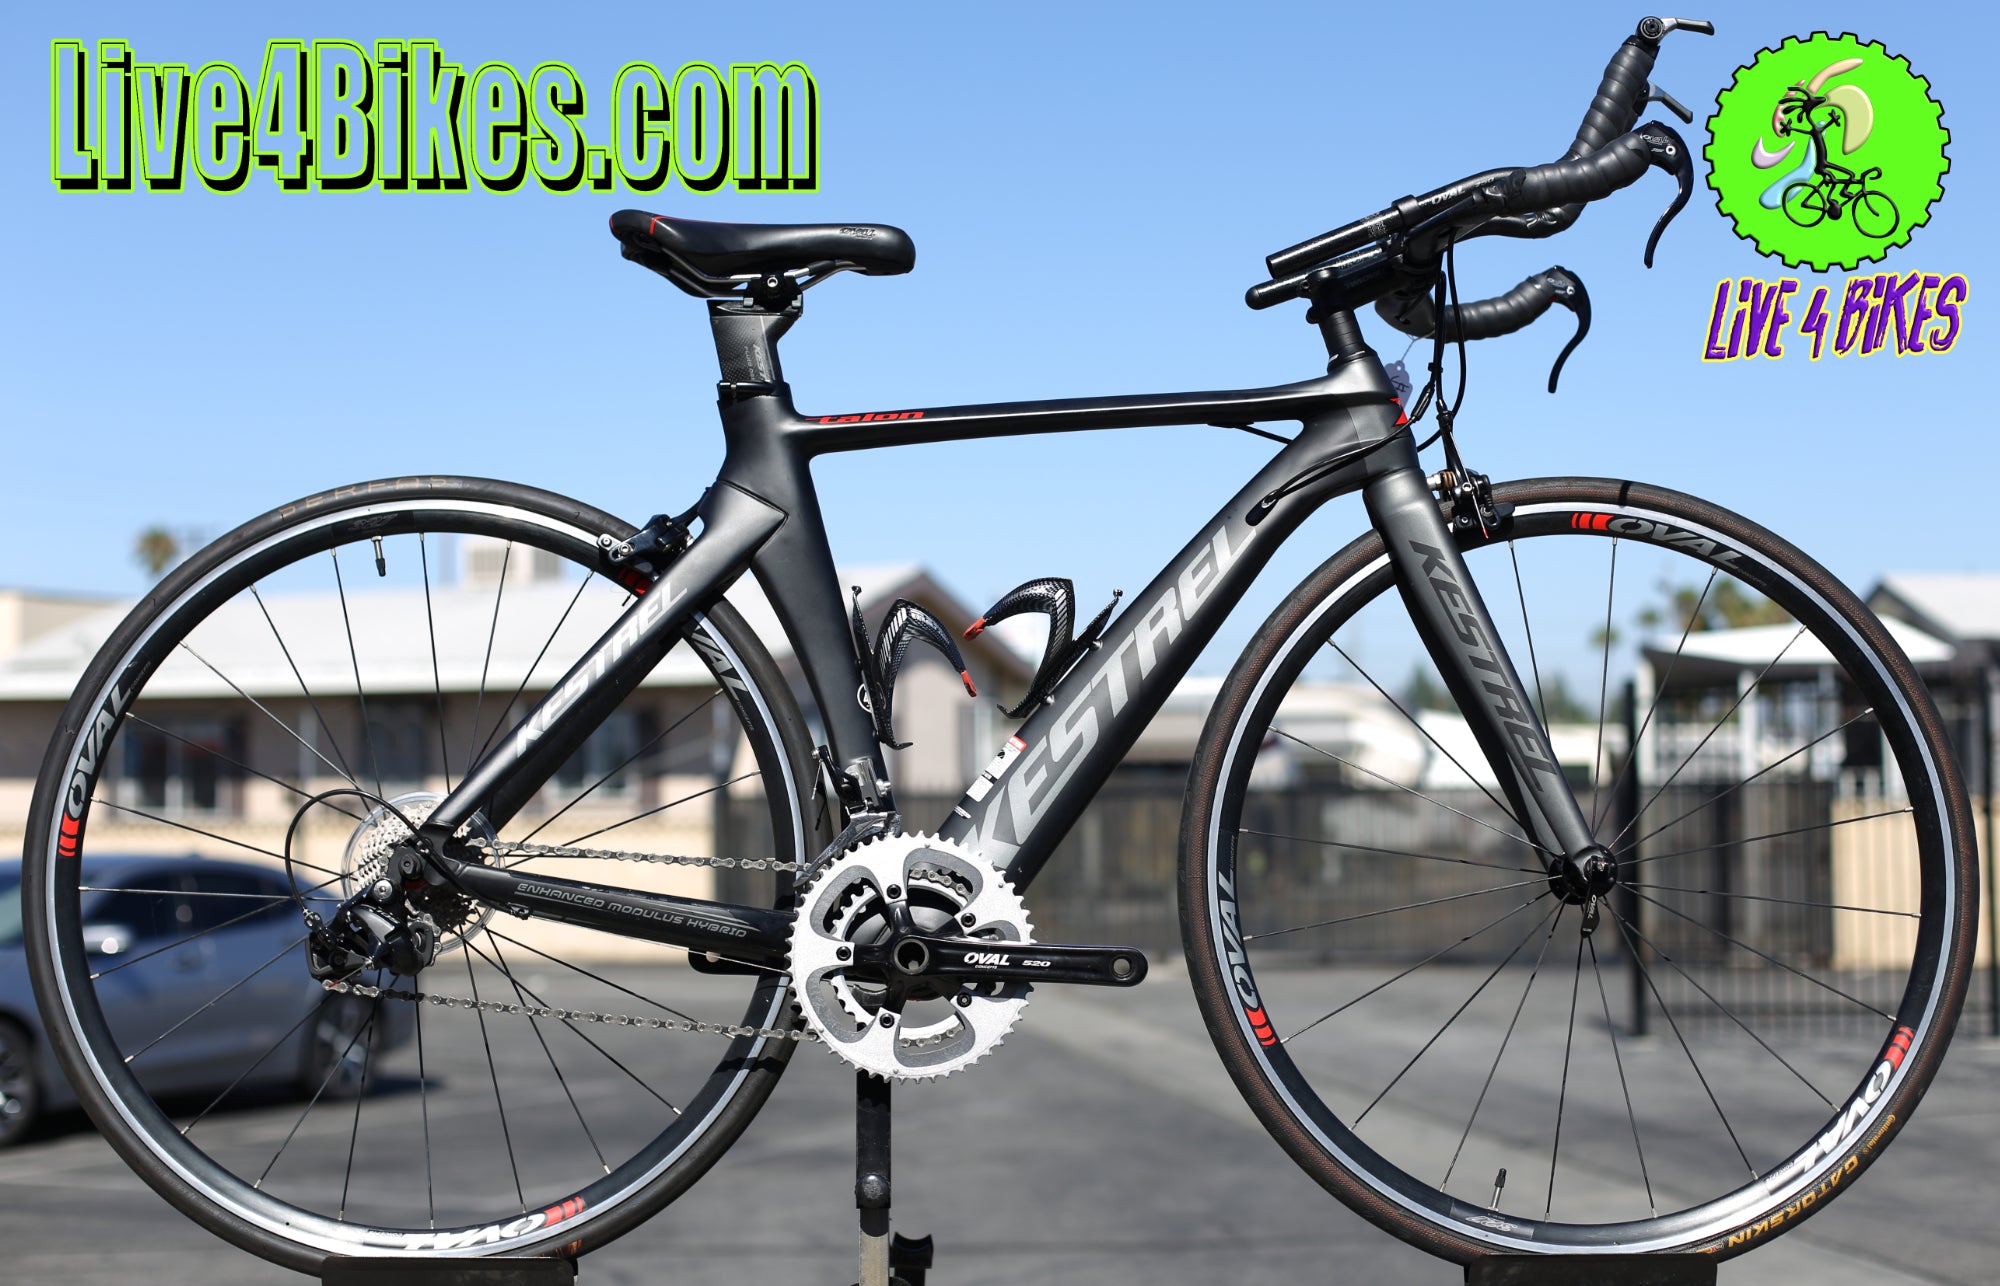 Kestrel Talon x 105 Time trial TT Triathlon Carbon Fiber Small  USED Bike - Live 4 Bikes